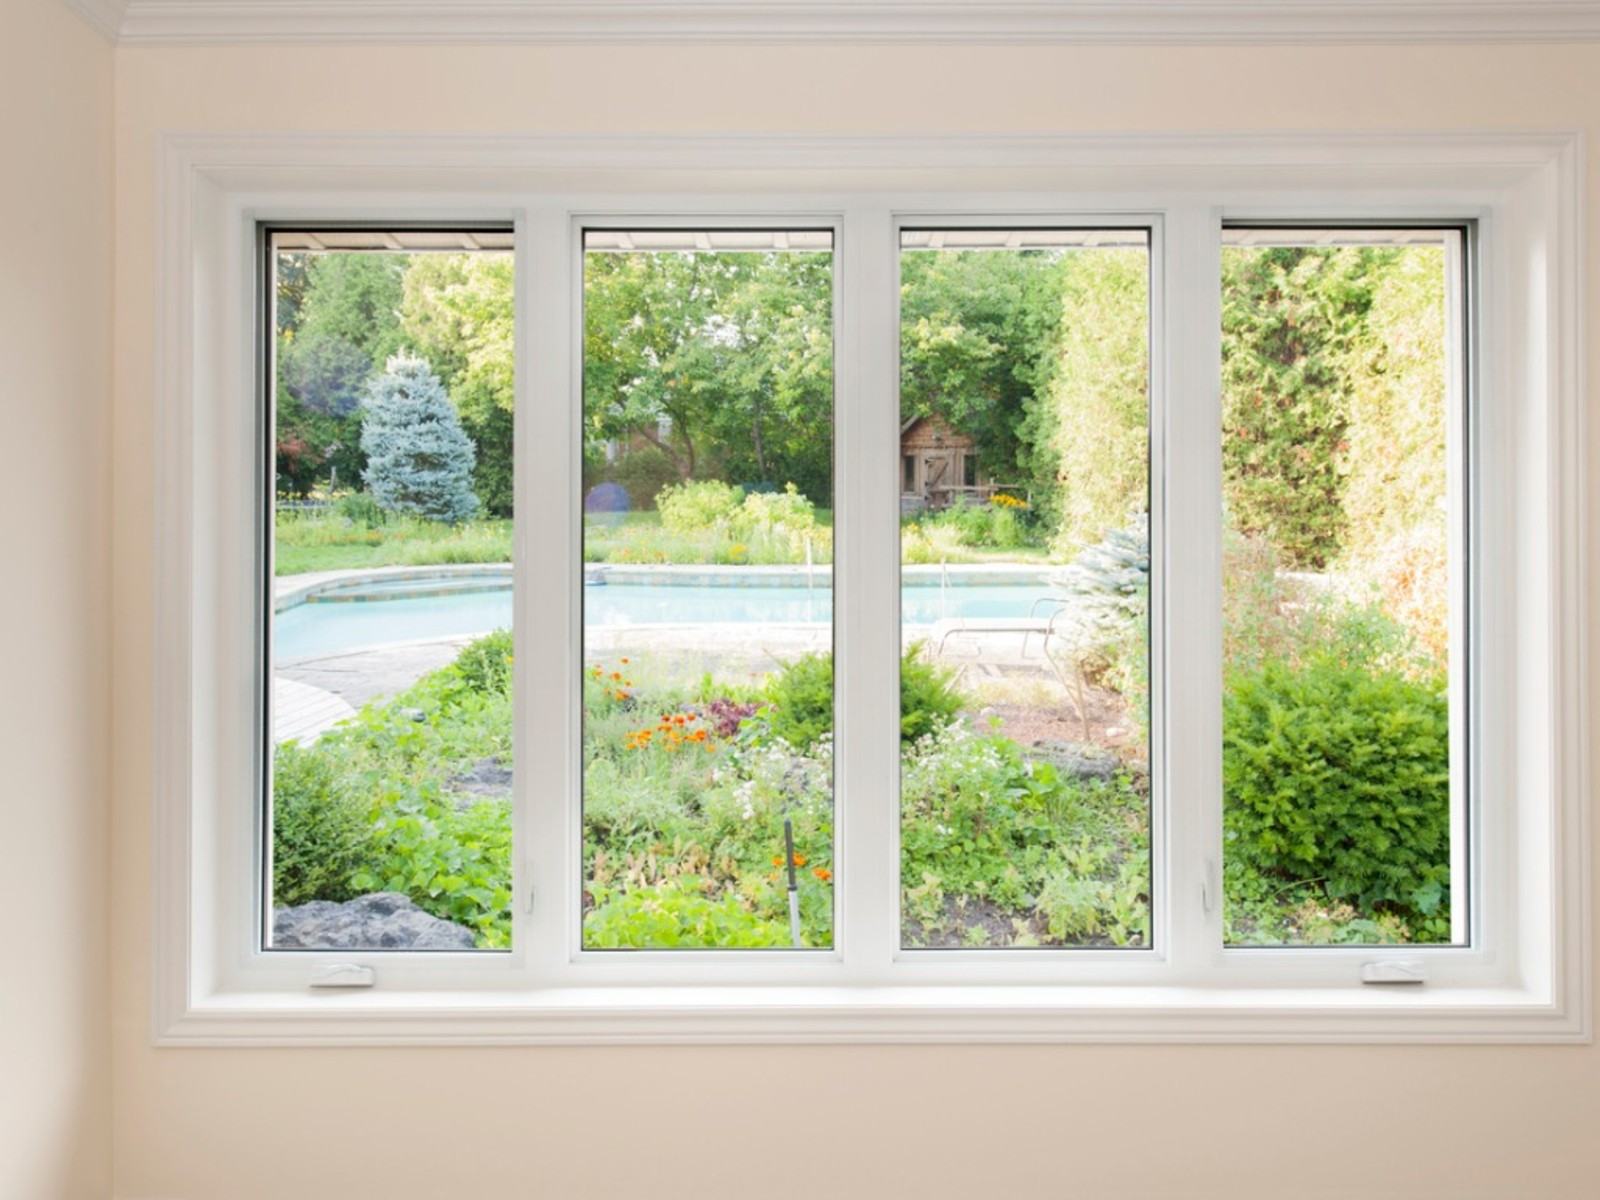 Evden En İyi Bahçe Manzarası – Bir Pencere Bahçe Manzarası Tasarlamak